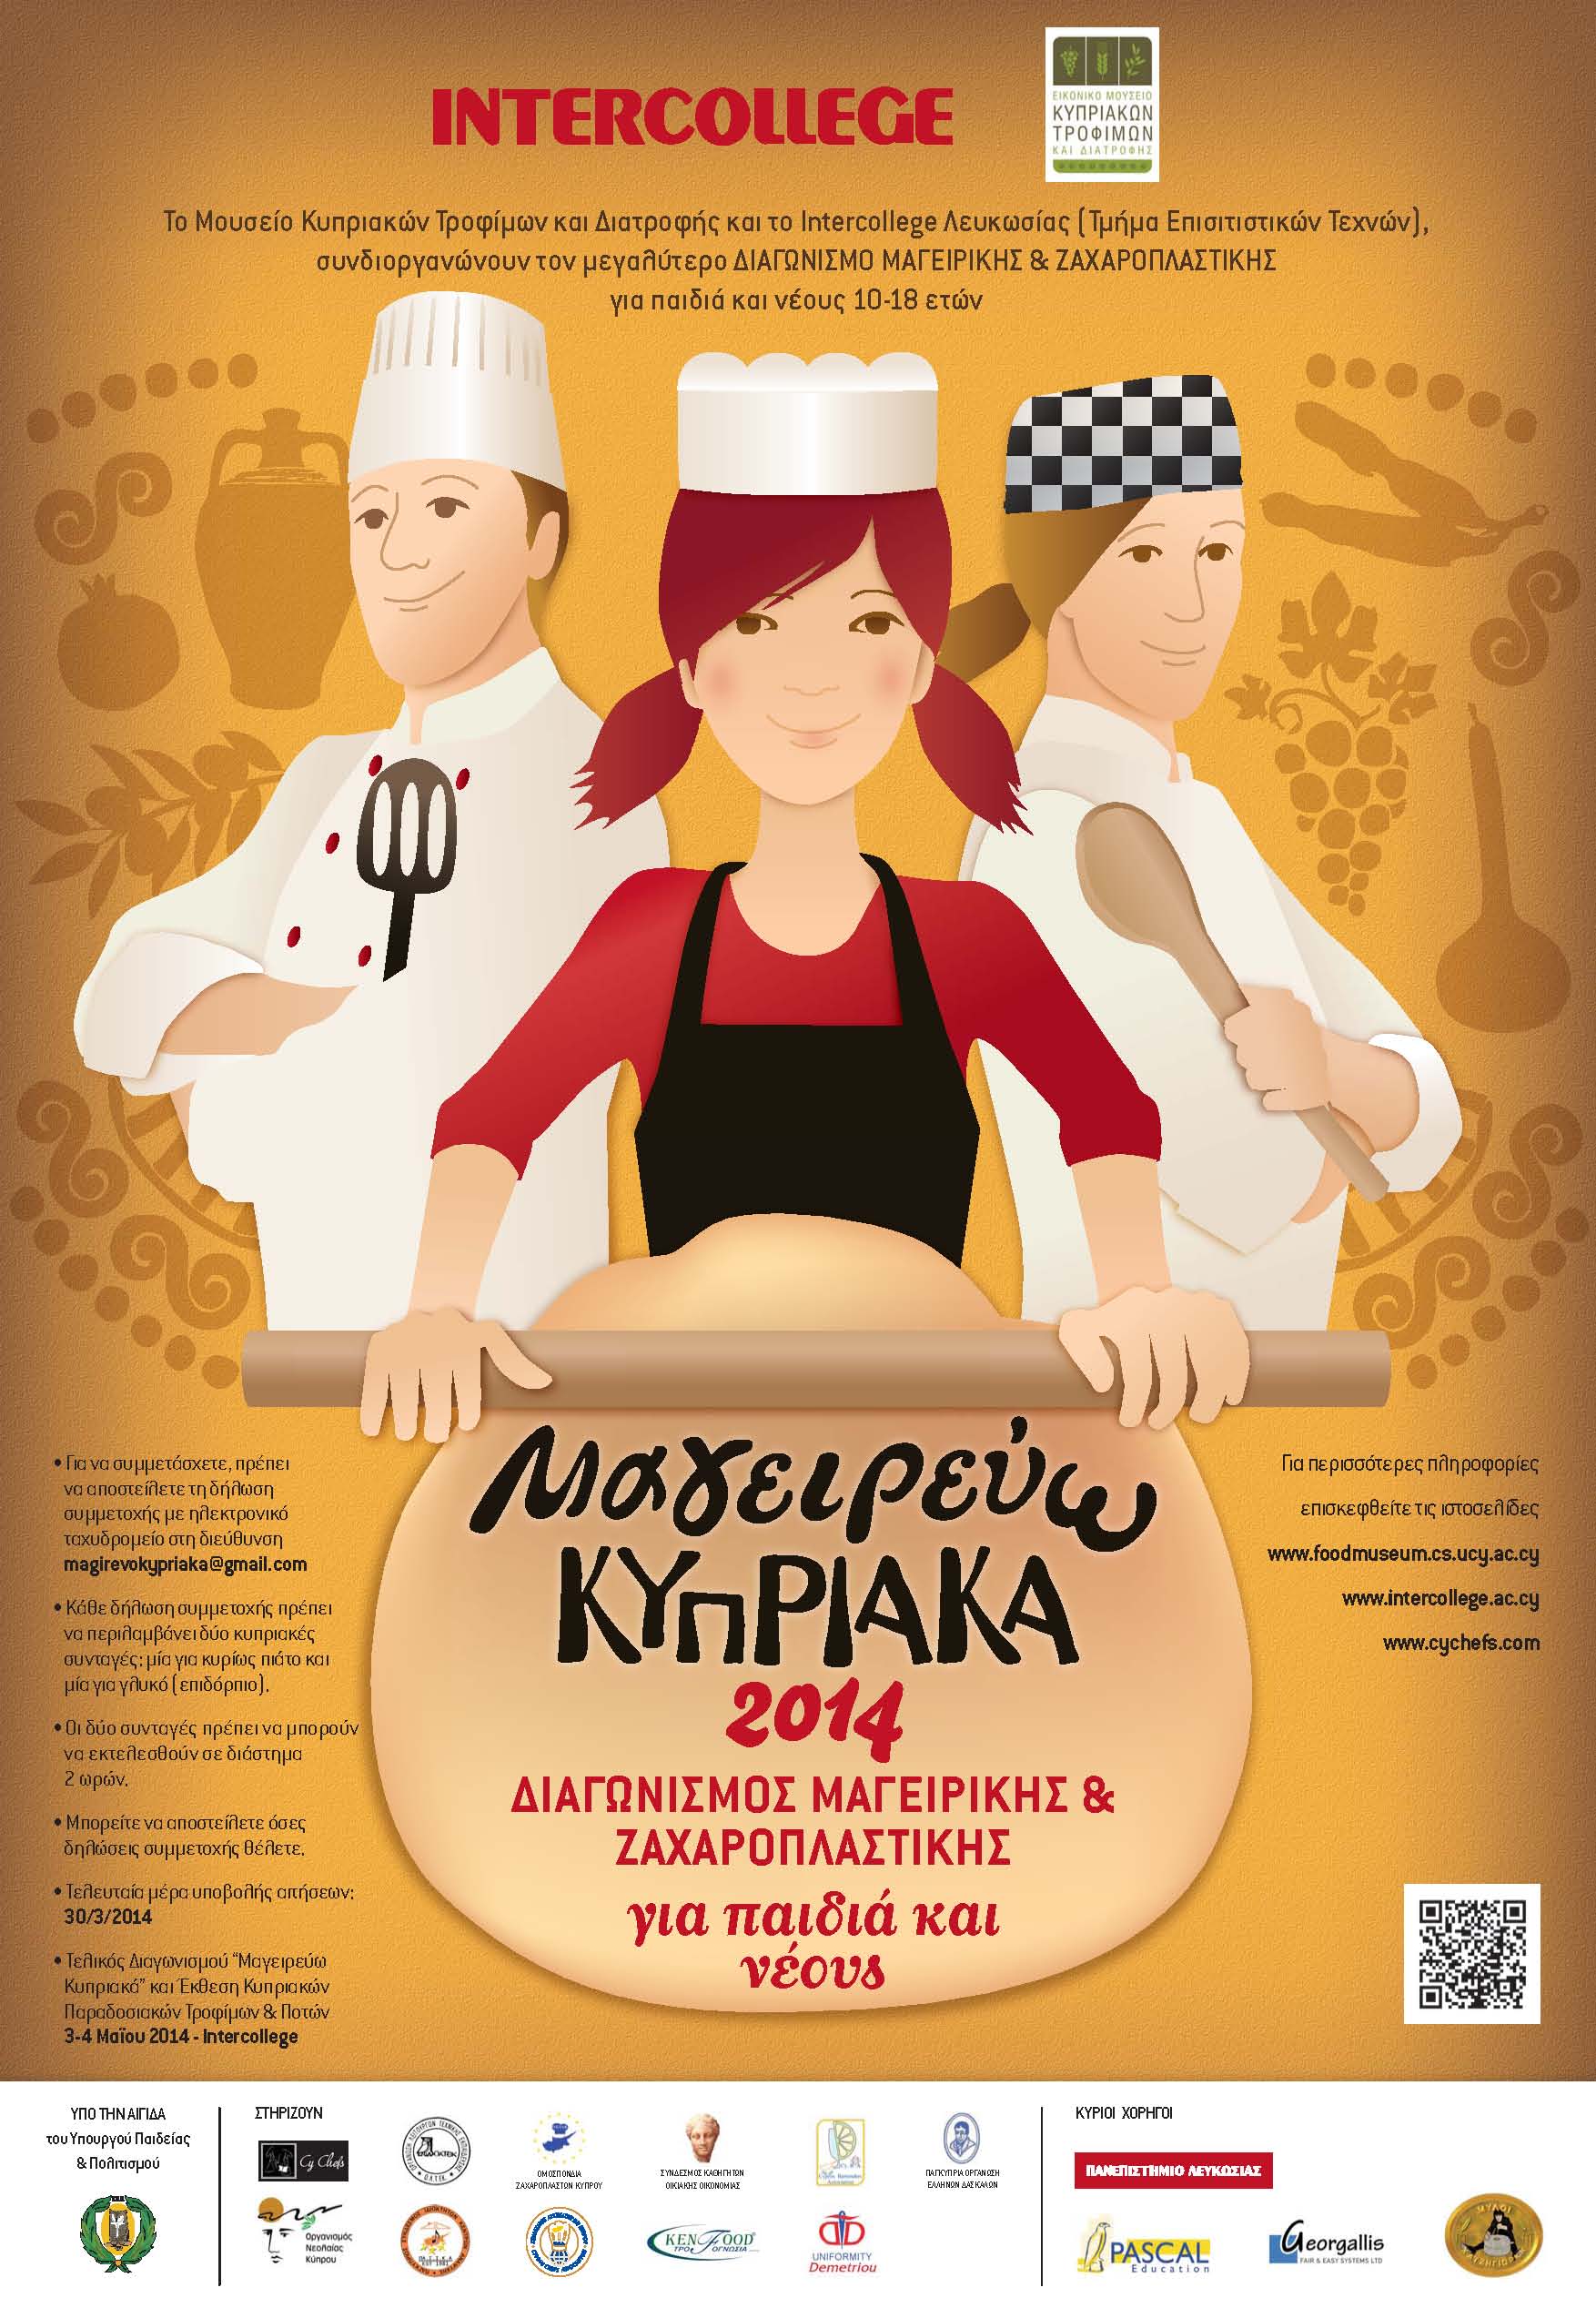 Μαγειρεύω Κυπριακά 2013-2014, πόστερ διαγωνισμού <br/> Πηγή: Μουσείο Κυπριακών Τροφίμων και Διατροφής. 